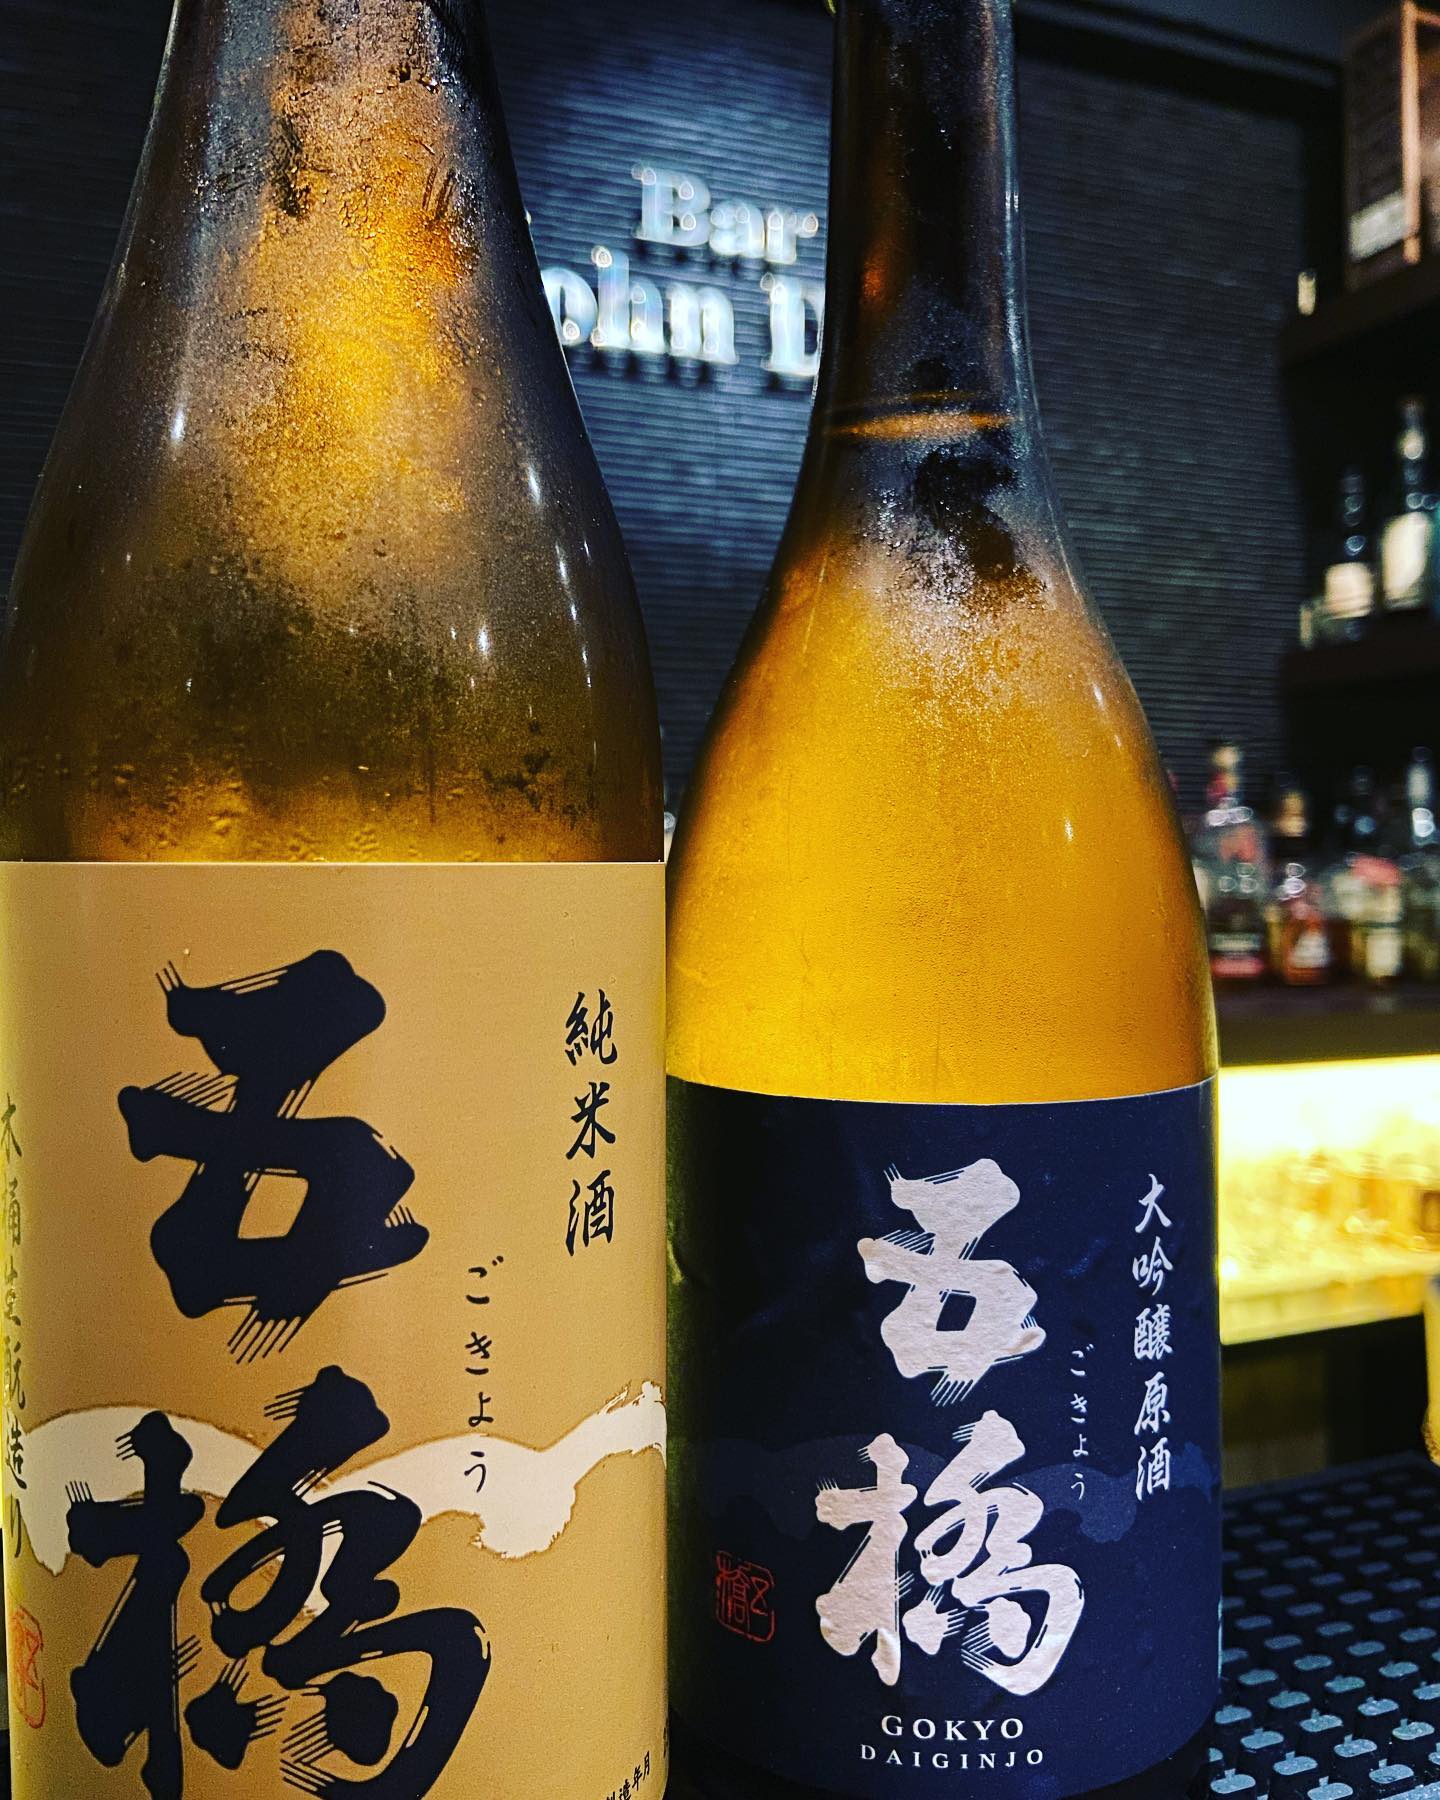 「五橋」ごきょうまだ、あまり知られてないのですがジョンドー では実は日本酒の五橋が呑めます！純米と大吟醸をご用意しております。山口のお酒を是非。ゴールデンウィークも通常営業しております。下北沢にお越しの際はお立ち寄り下さいませ。#bar #johndoe #shimokitazawa #whiskey #cocktails #beer #wine #foods #pasta #下北沢 #南西口 #バー #1人呑み #隠れ家 #カクテル #ワイン #パスタ #グラタン #全席喫煙ok #山口県 #二次会 #デート #深夜営業 #貸切#五橋#日本酒#冷や#ゴールデンウィーク通常営業本日の下北沢BarJohnDoe